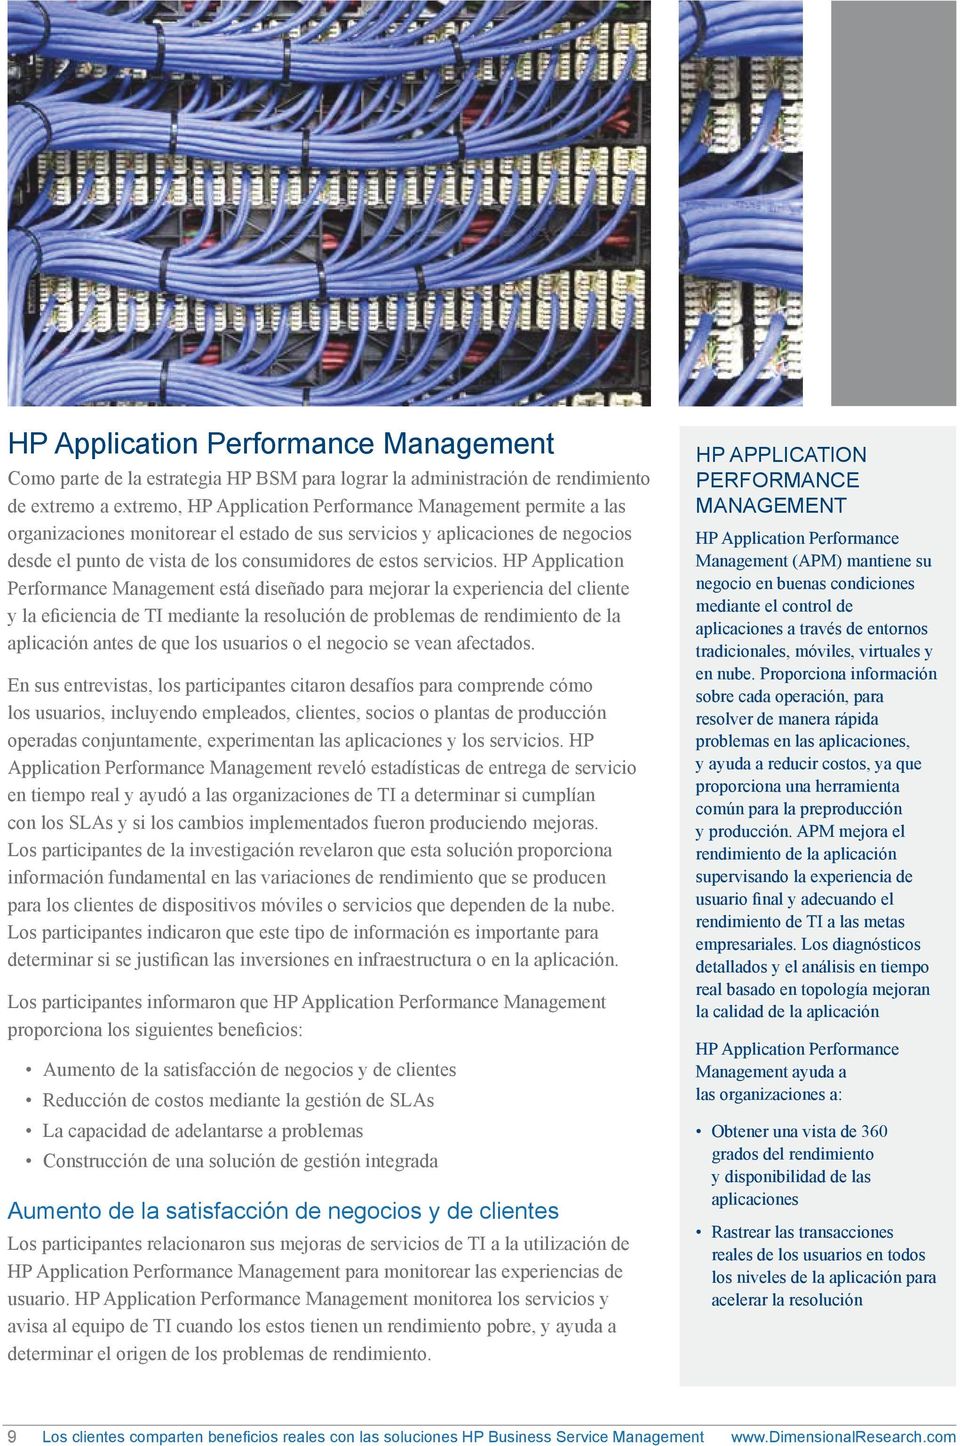 HP Application Performance Management está diseñado para mejorar la experiencia del cliente y la eficiencia de TI mediante la resolución de problemas de rendimiento de la aplicación antes de que los